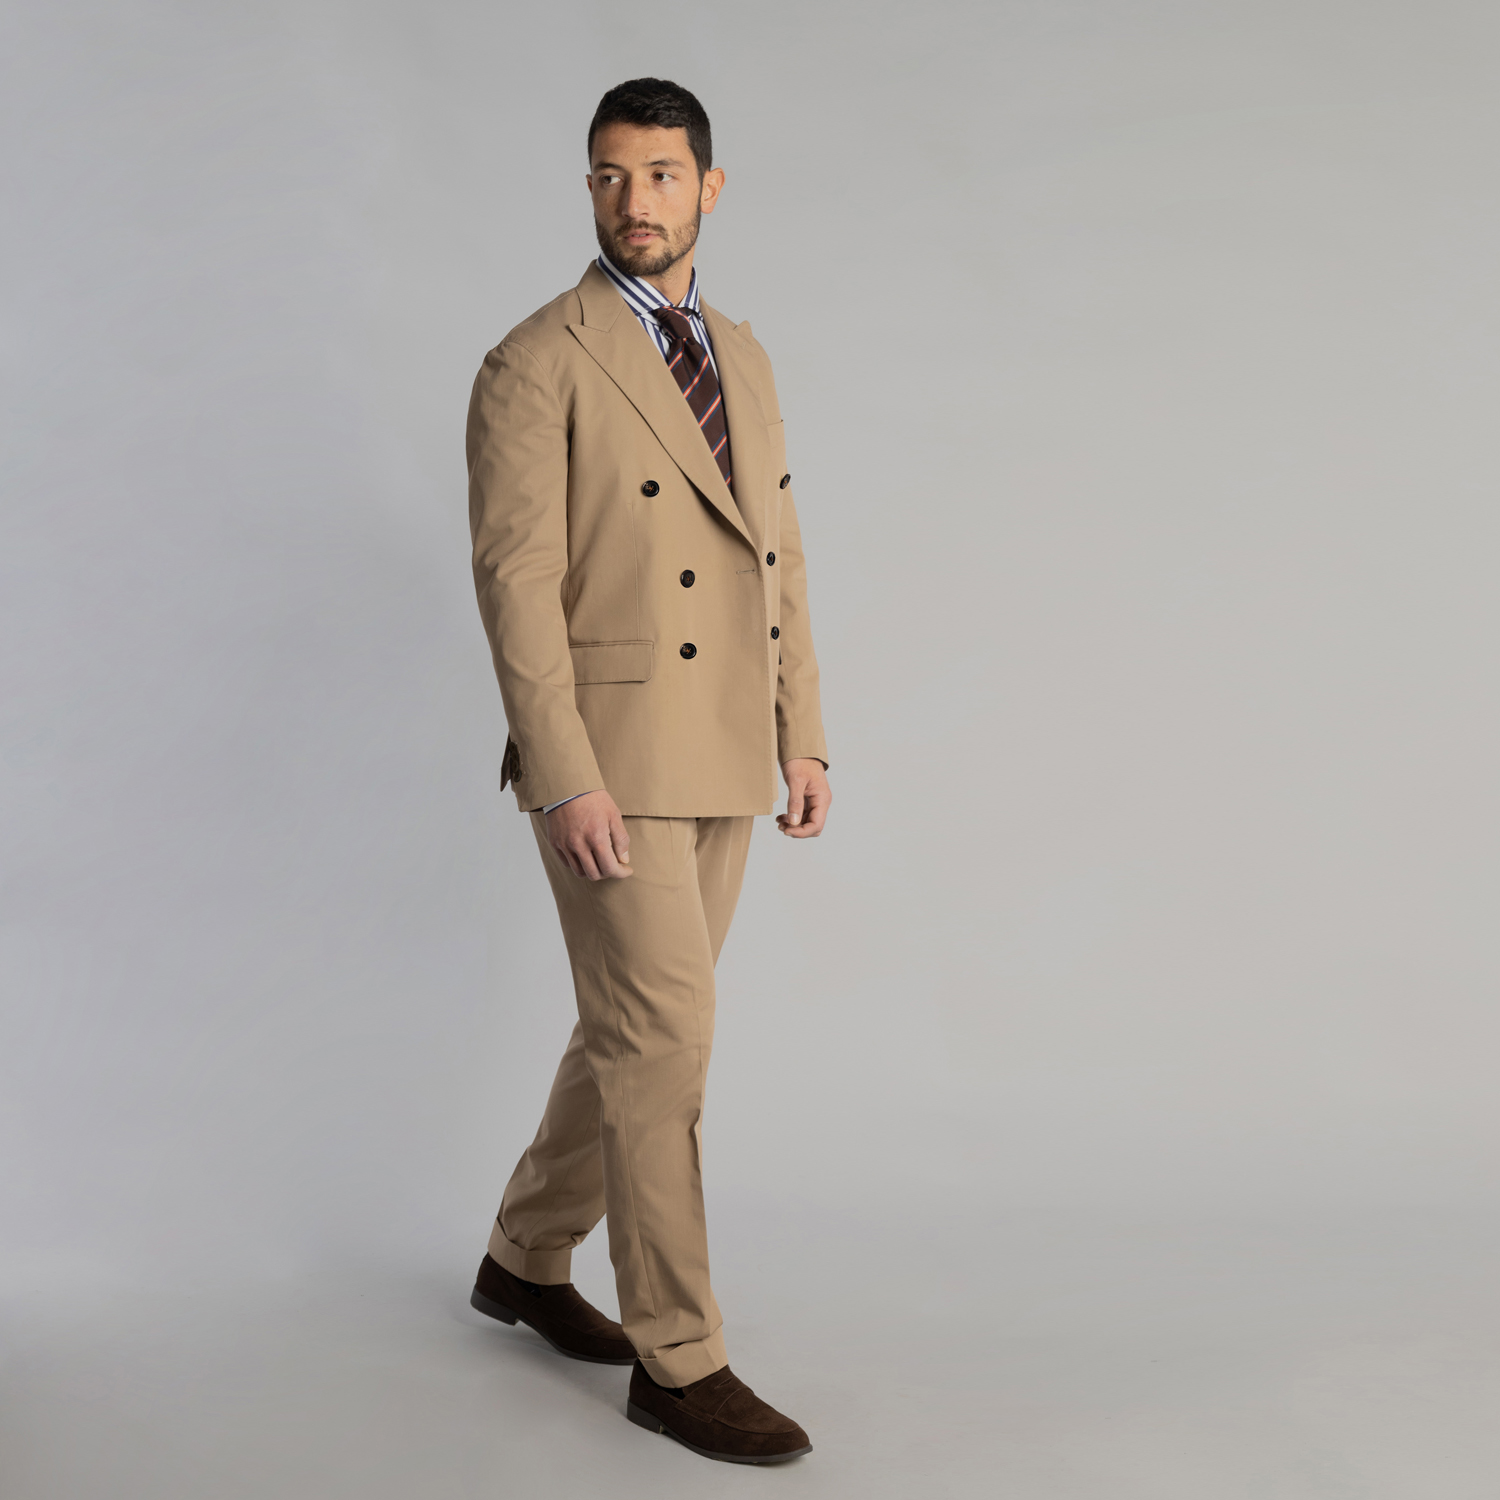 Buy Men's Beige Rich Gabardine Suit @Tailorman Custom Made Suits